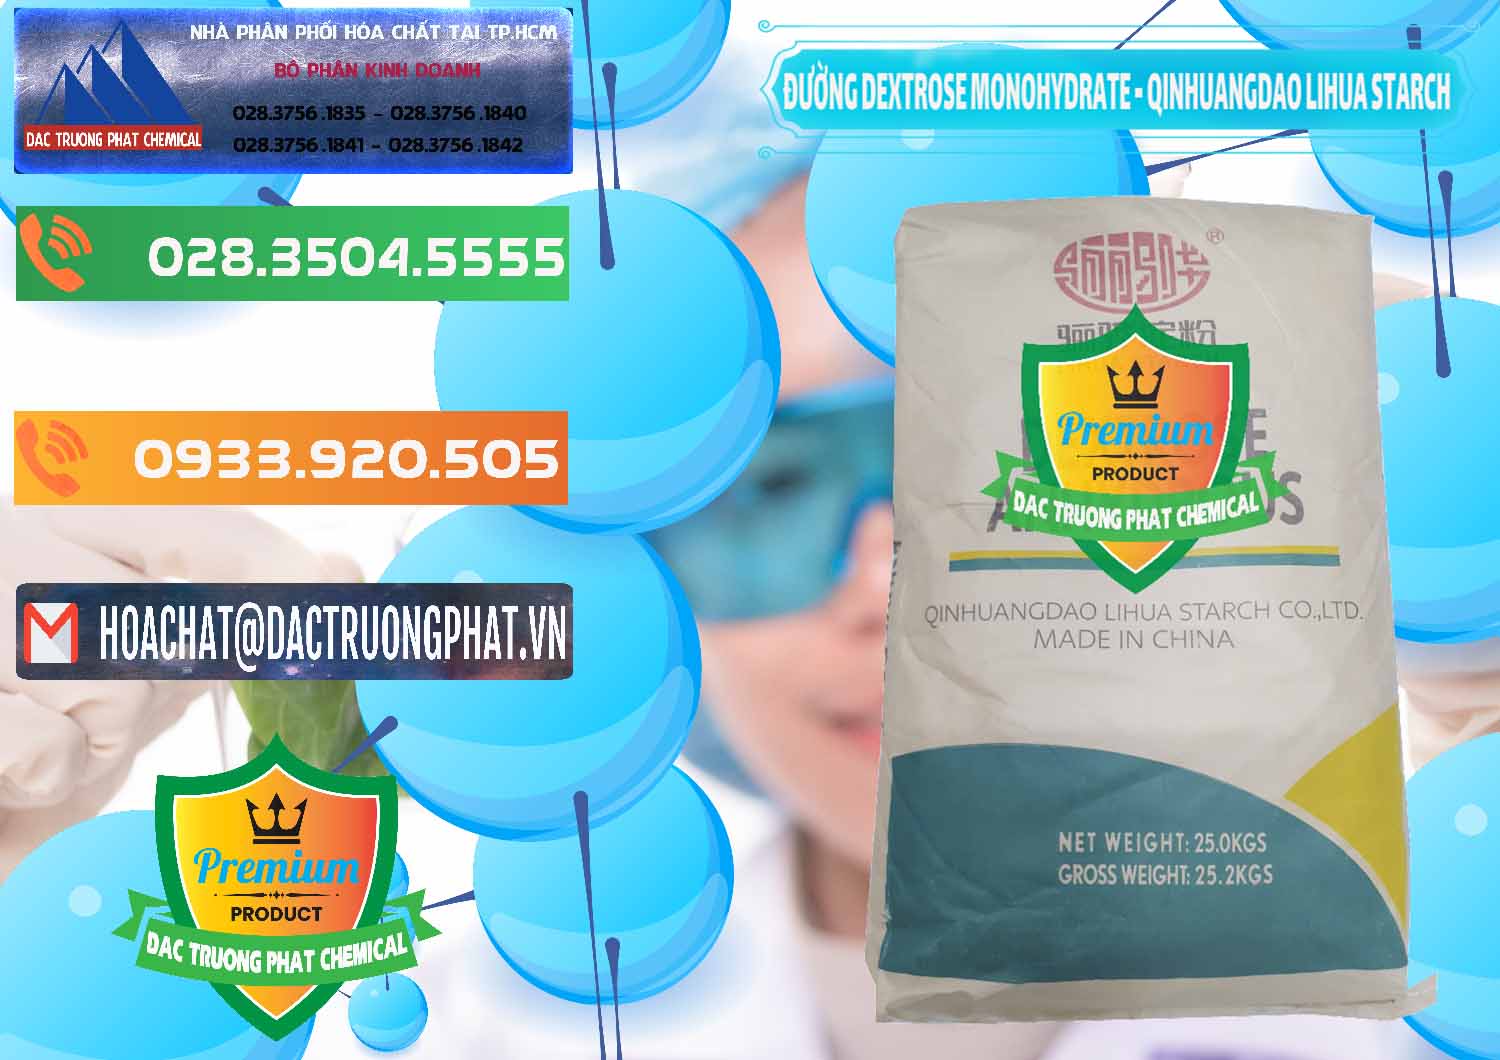 Nơi bán Đường Dextrose Monohydrate Food Grade Qinhuangdao Lihua Starch - 0224 - Nơi phân phối & cung ứng hóa chất tại TP.HCM - hoachatxulynuoc.com.vn